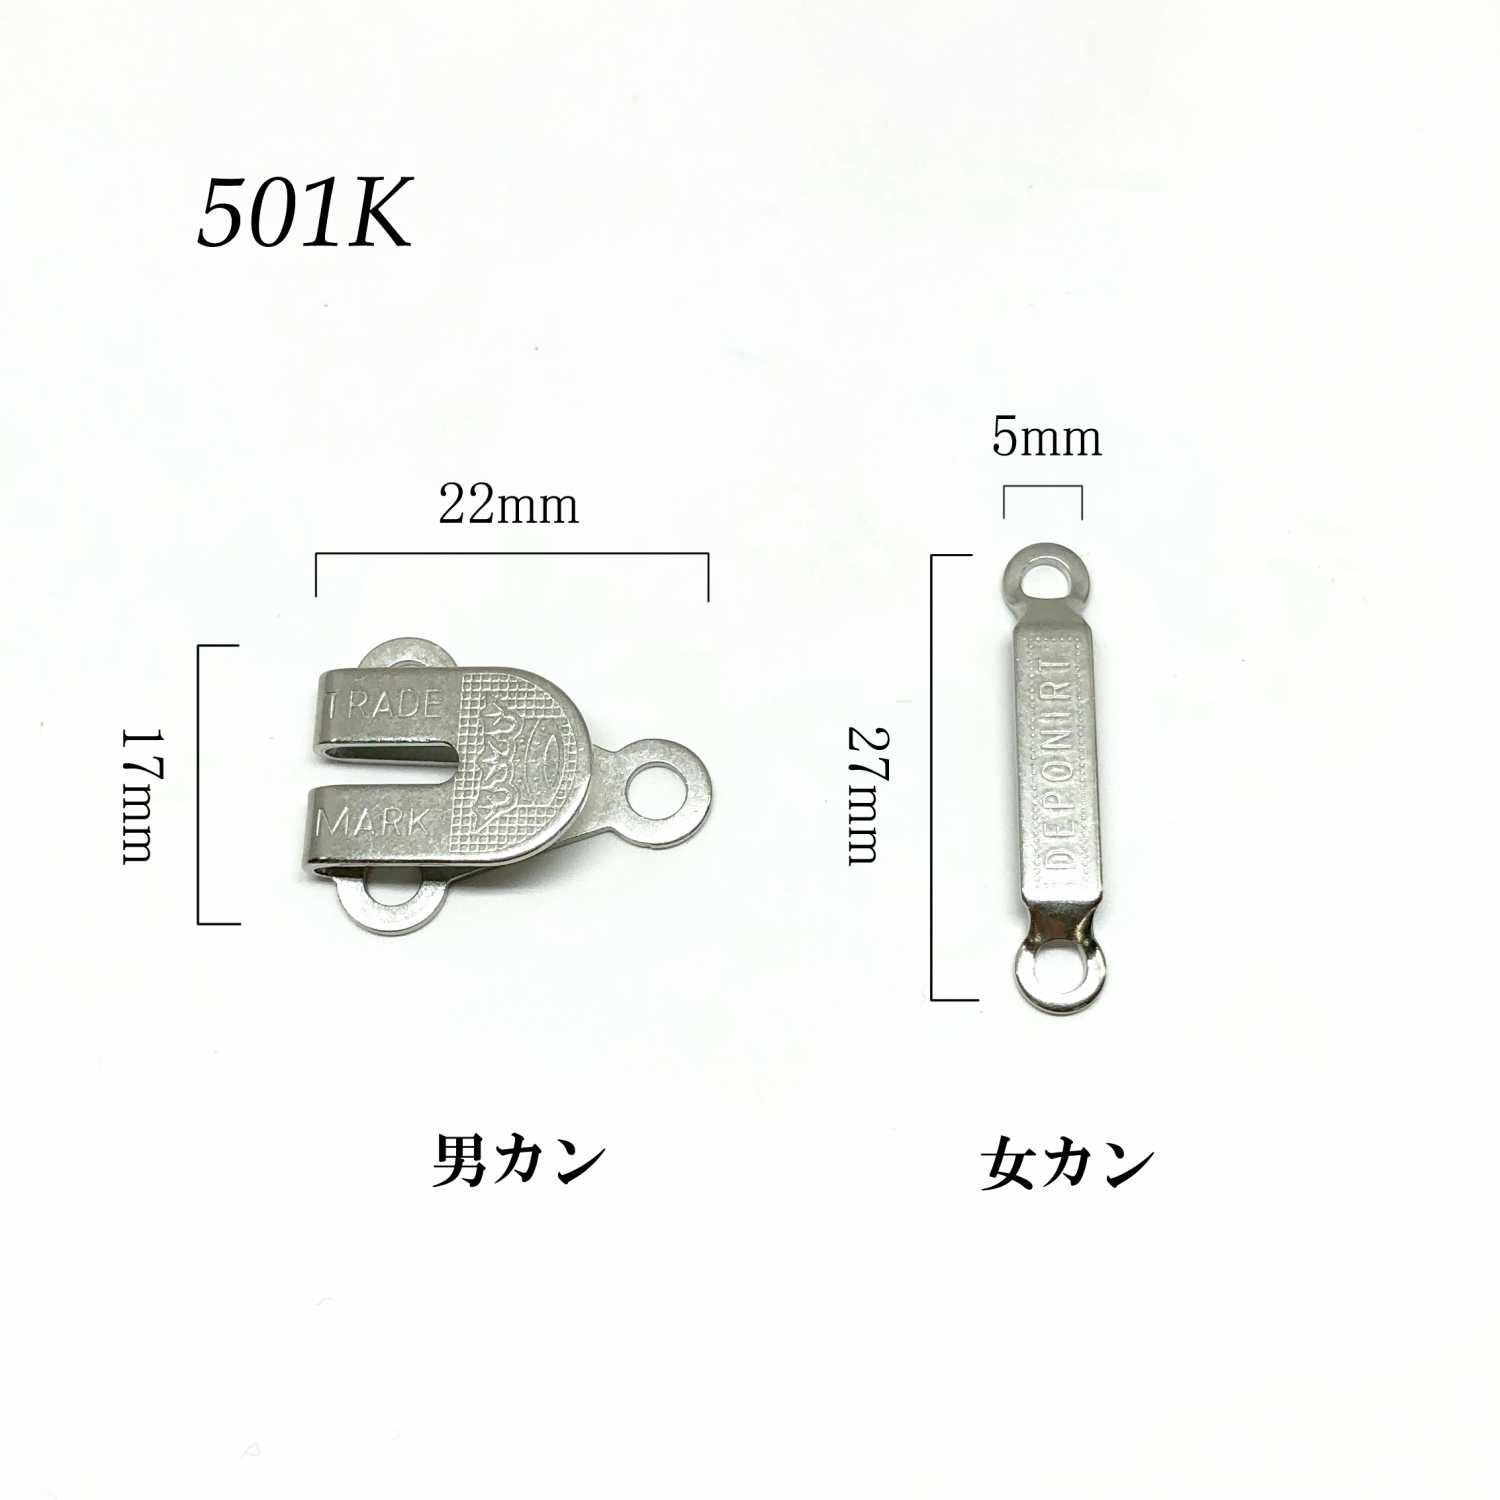 501K Front Hook (Hook And Eye Closure) Morito